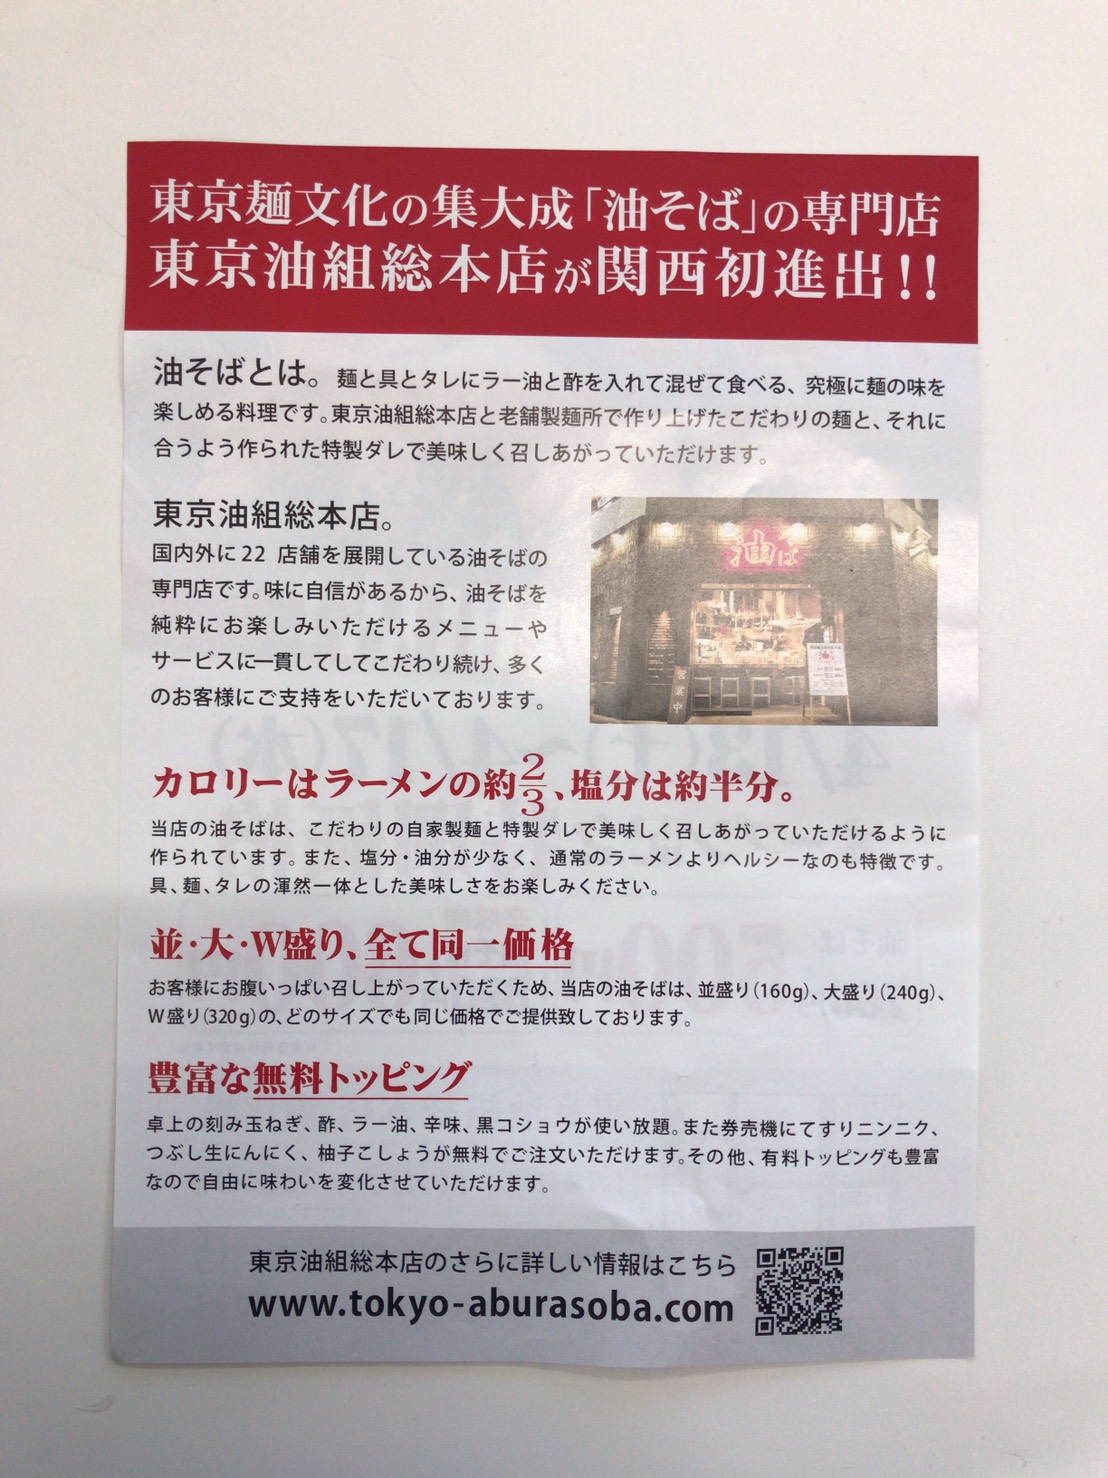 関西初上陸 油そばの 東京油組総本店滋賀組 が4月13日新規オープン 17日までの5日間 限定価格で食べられます 滋賀のママがイベント 育児 遊び 学びを発信 シガマンマ ピースマム